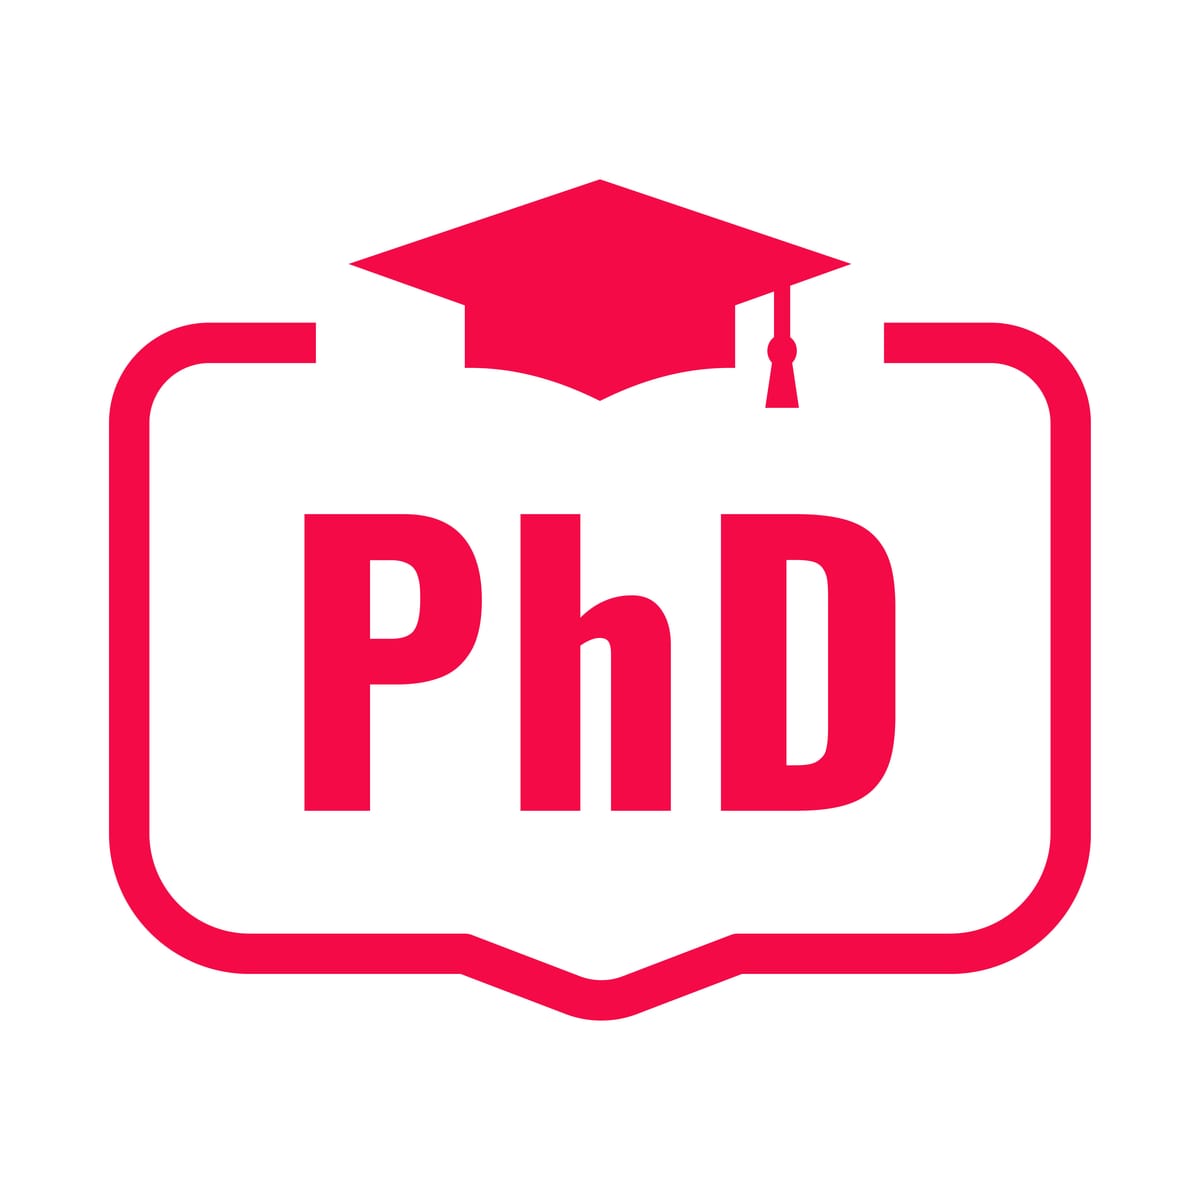 A phd degree